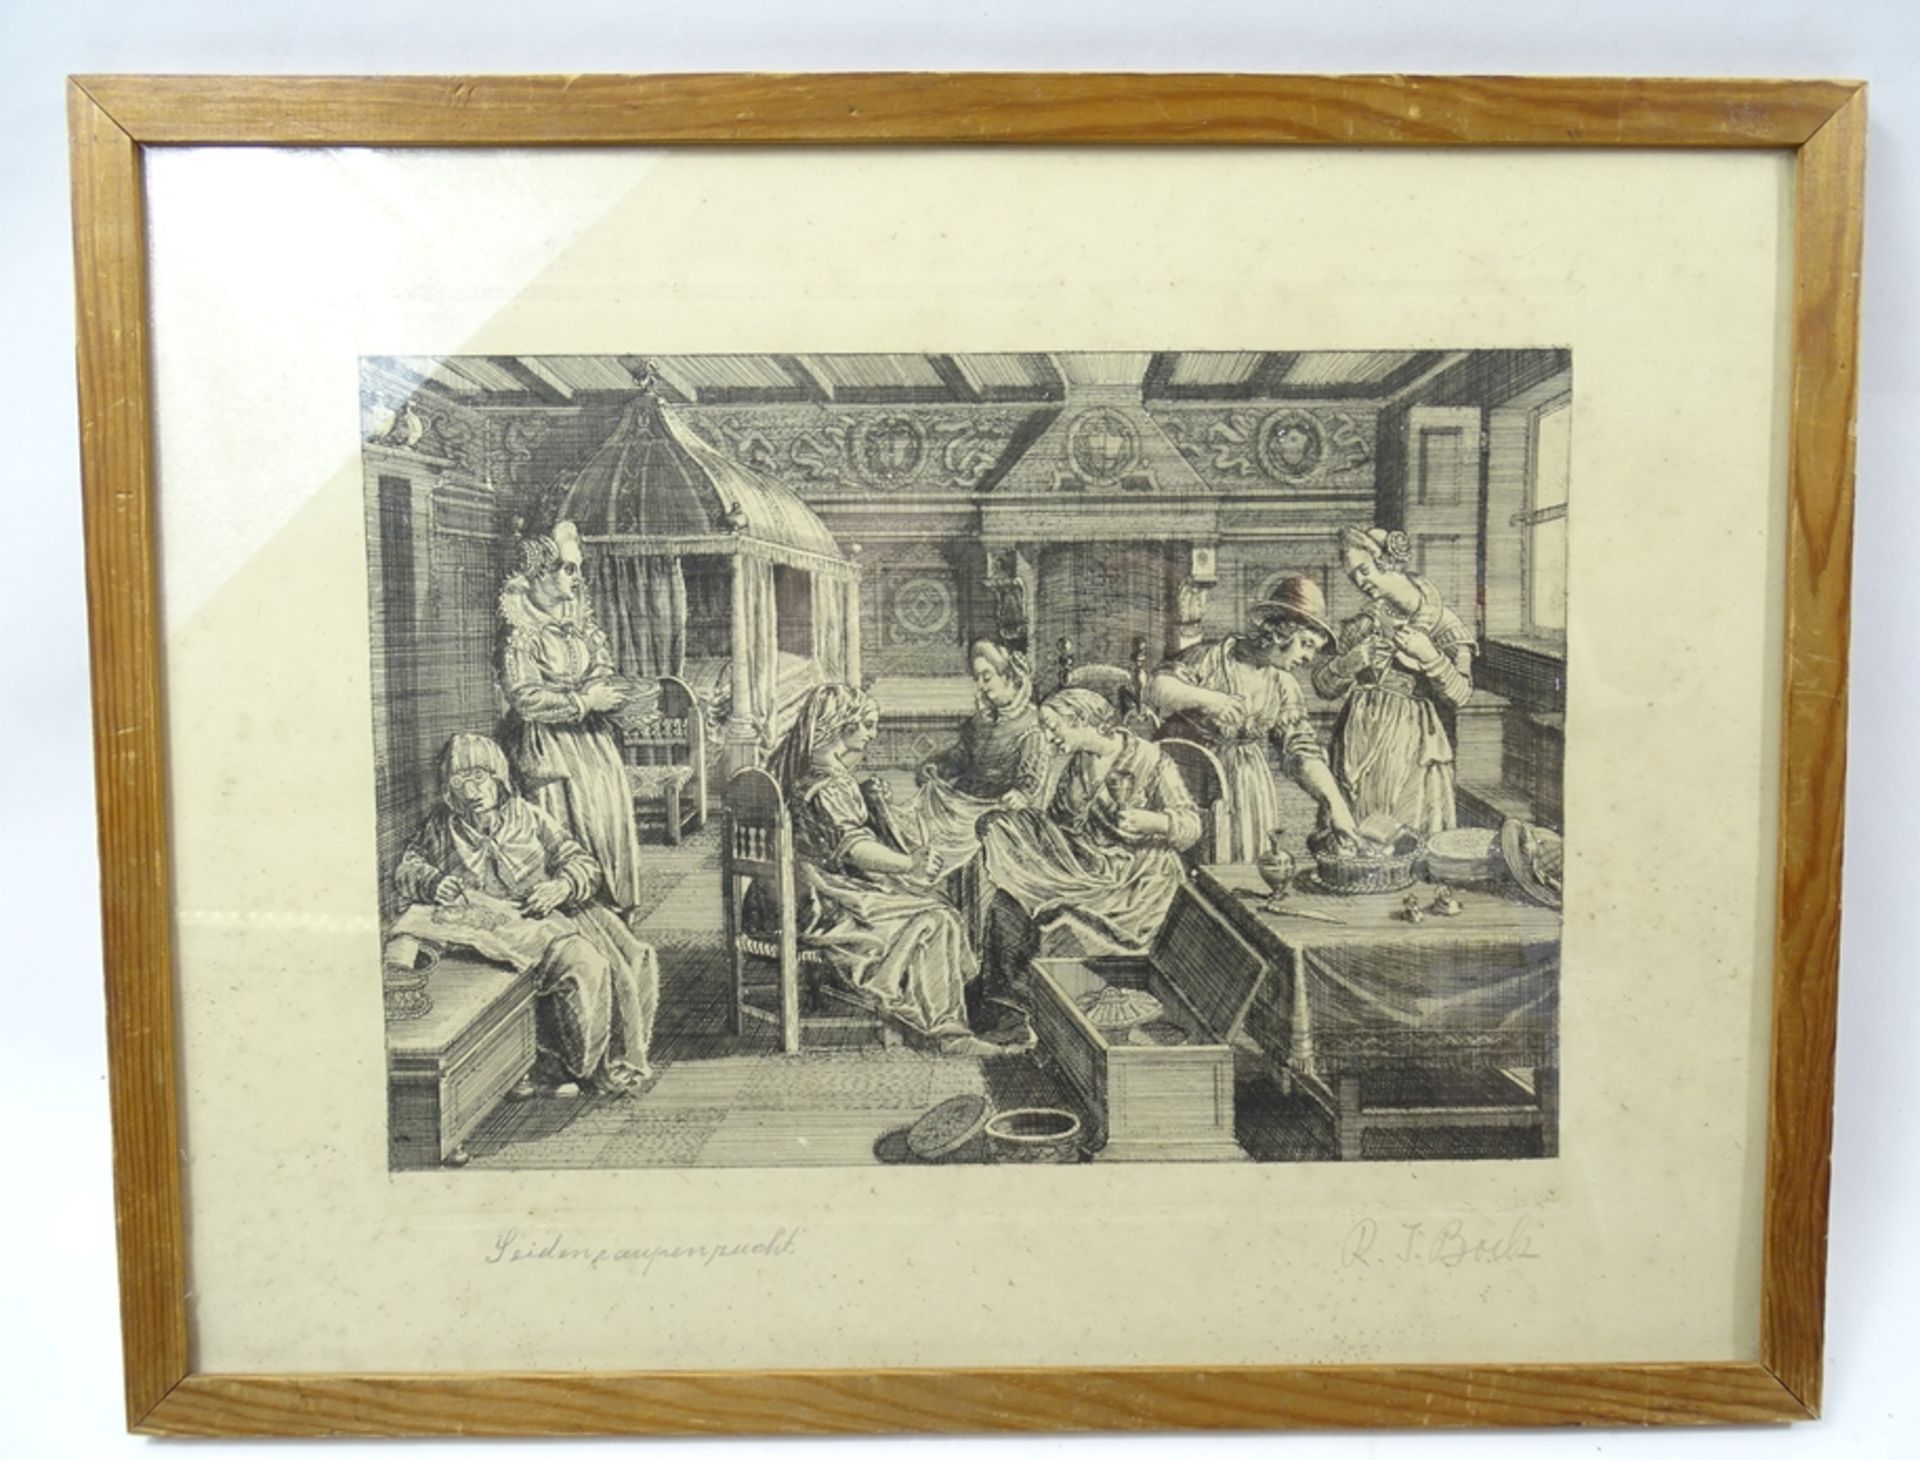 R.J. Bock, Seidenraupenzucht, Radierung, gerahmt, hinter Glas, RG 37,8 x 29,5 cm, Rahmen mit Alters